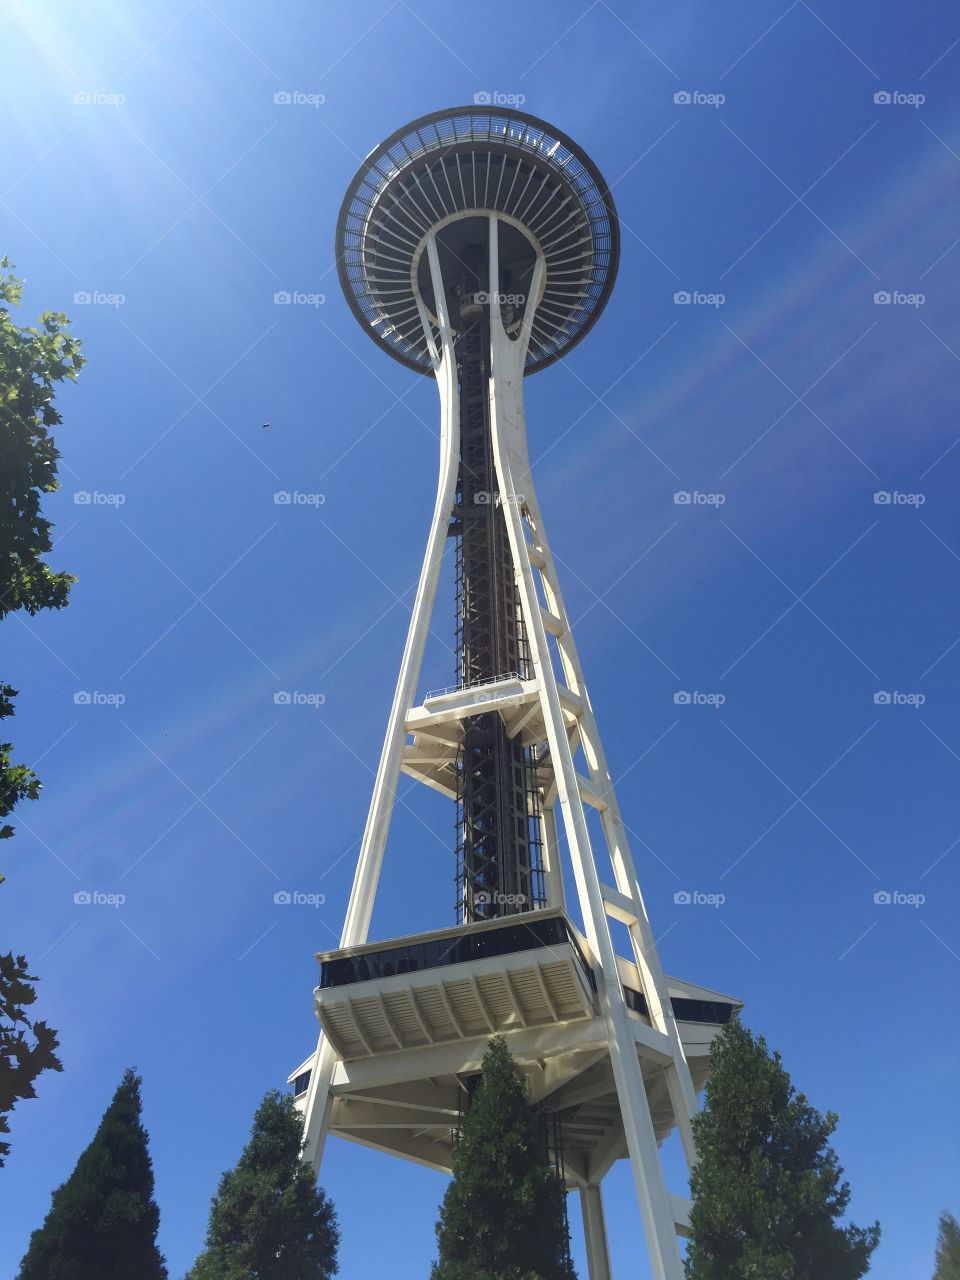 Space Needle / Seattle, WA